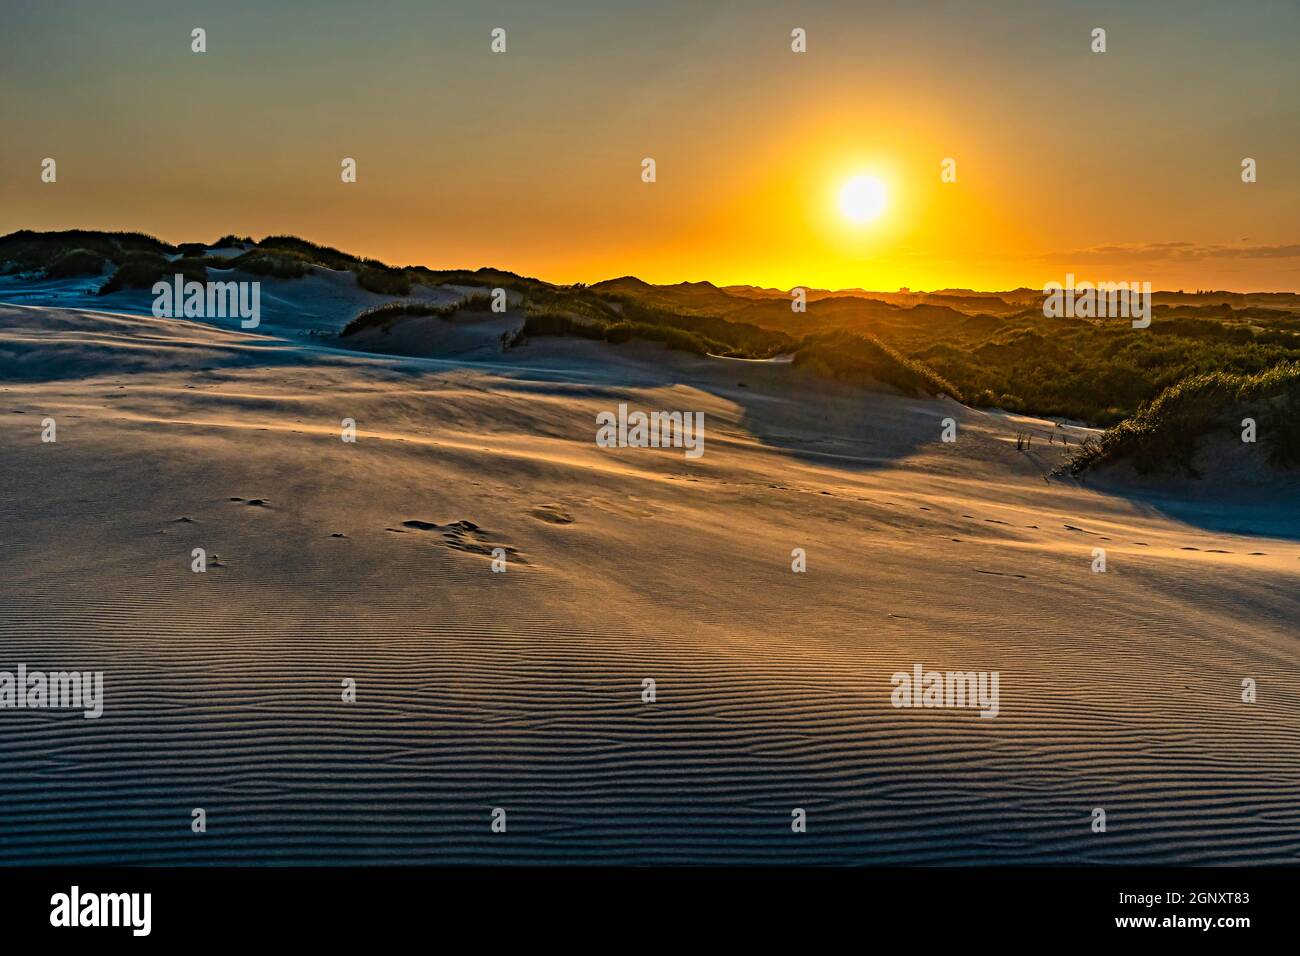 Moving sand dunes in the Danish desert at sunset. Råbjerg Mile, Skagen, Denmark, Europe Stock Photo